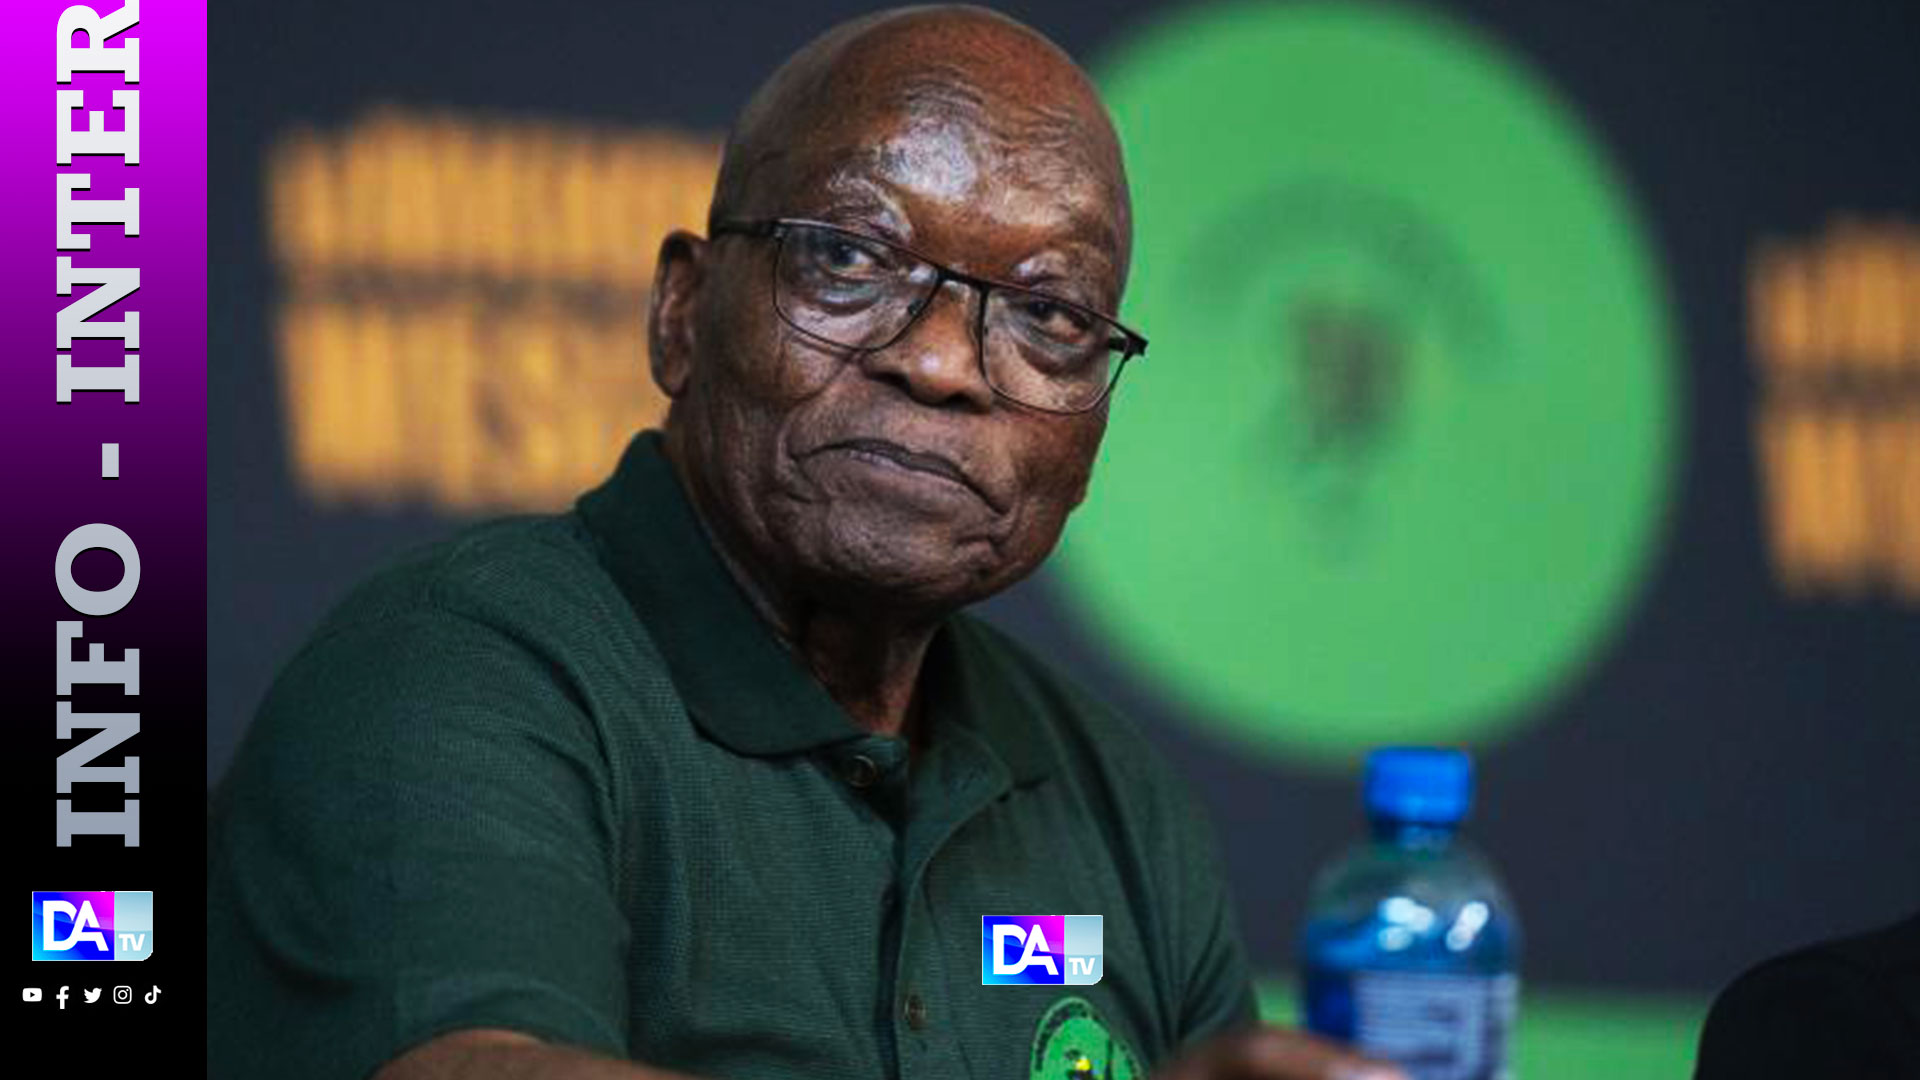 Afrique du Sud: Jacob Zuma, le sulfureux ex-président devenu inéligible